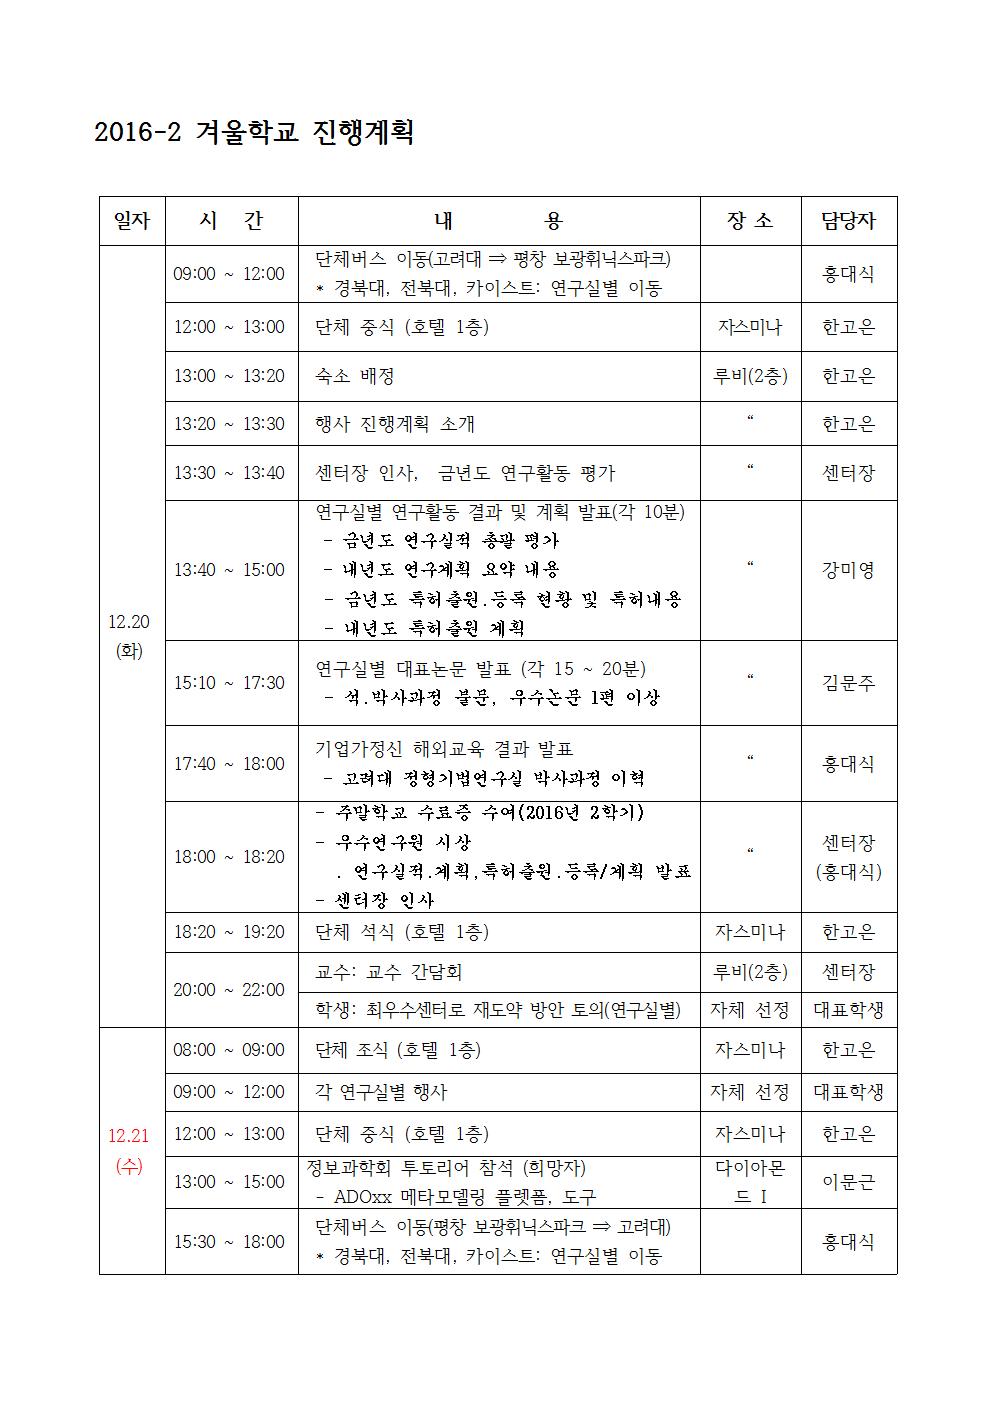 2016-2 겨울학교 진행계획 (2016. 12. 19 수정) (1)001.jpg